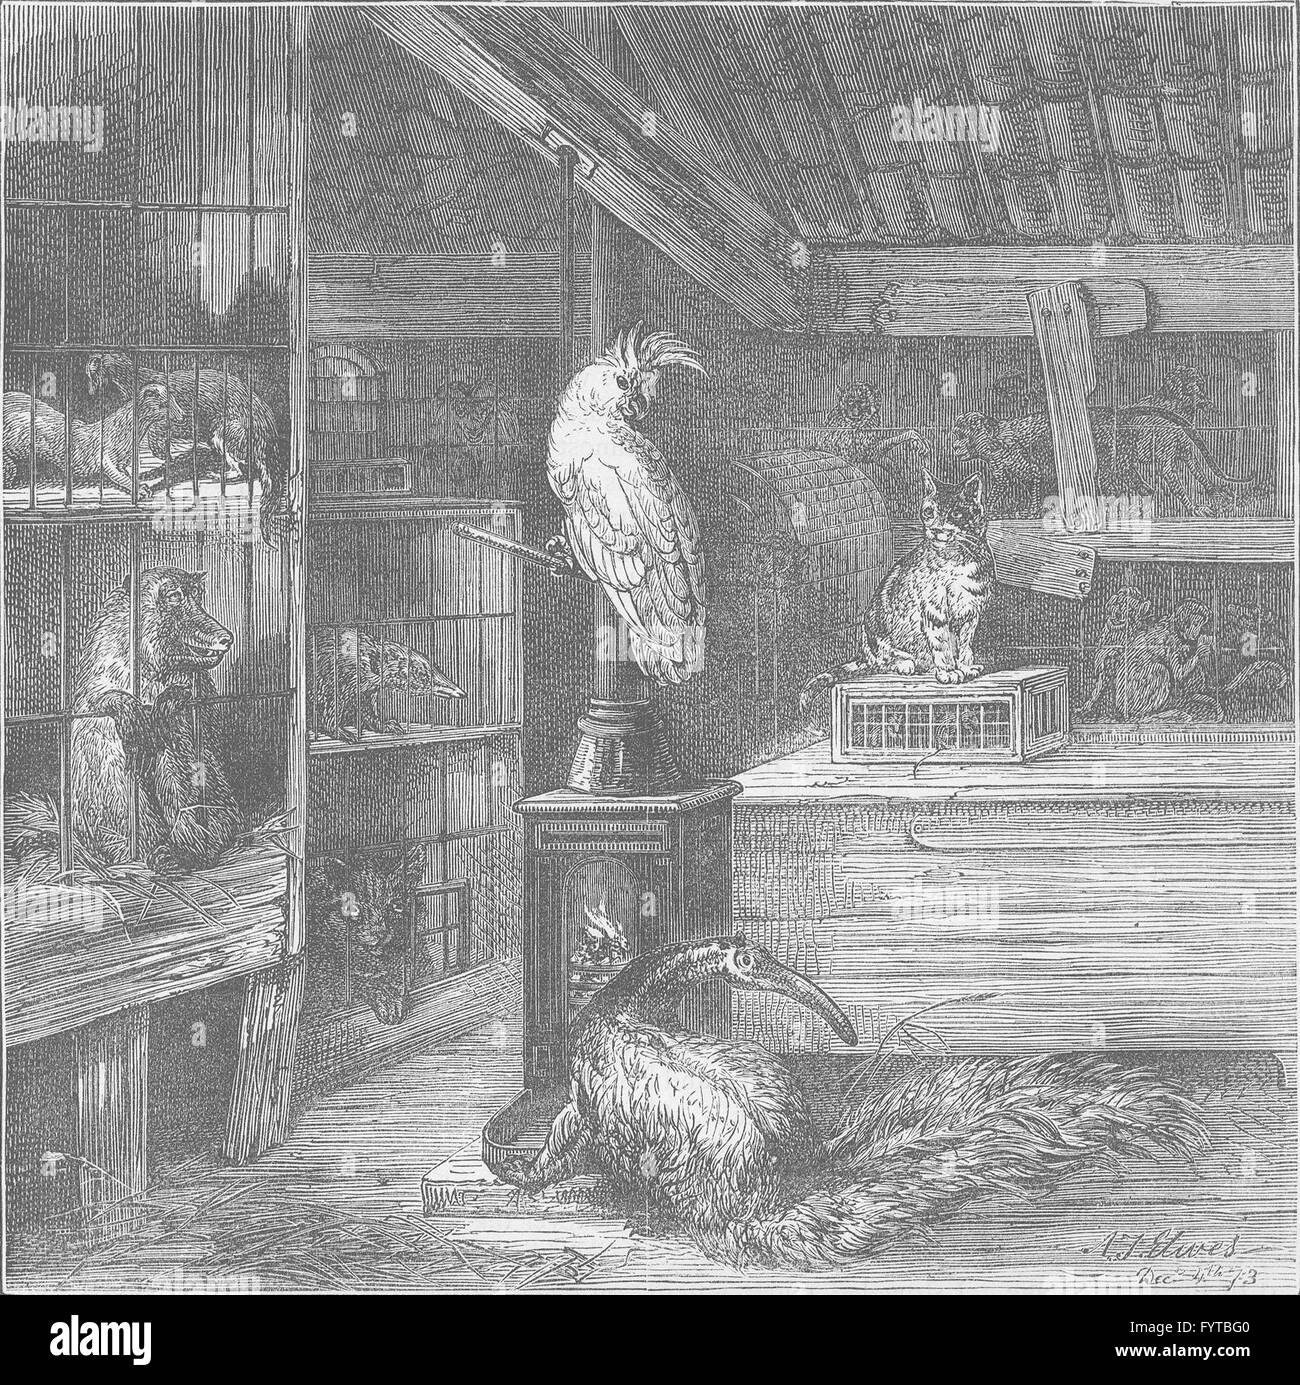 WAPPING: una bestia salvaje-shop. Londres, grabado antiguo c1880 Foto de stock